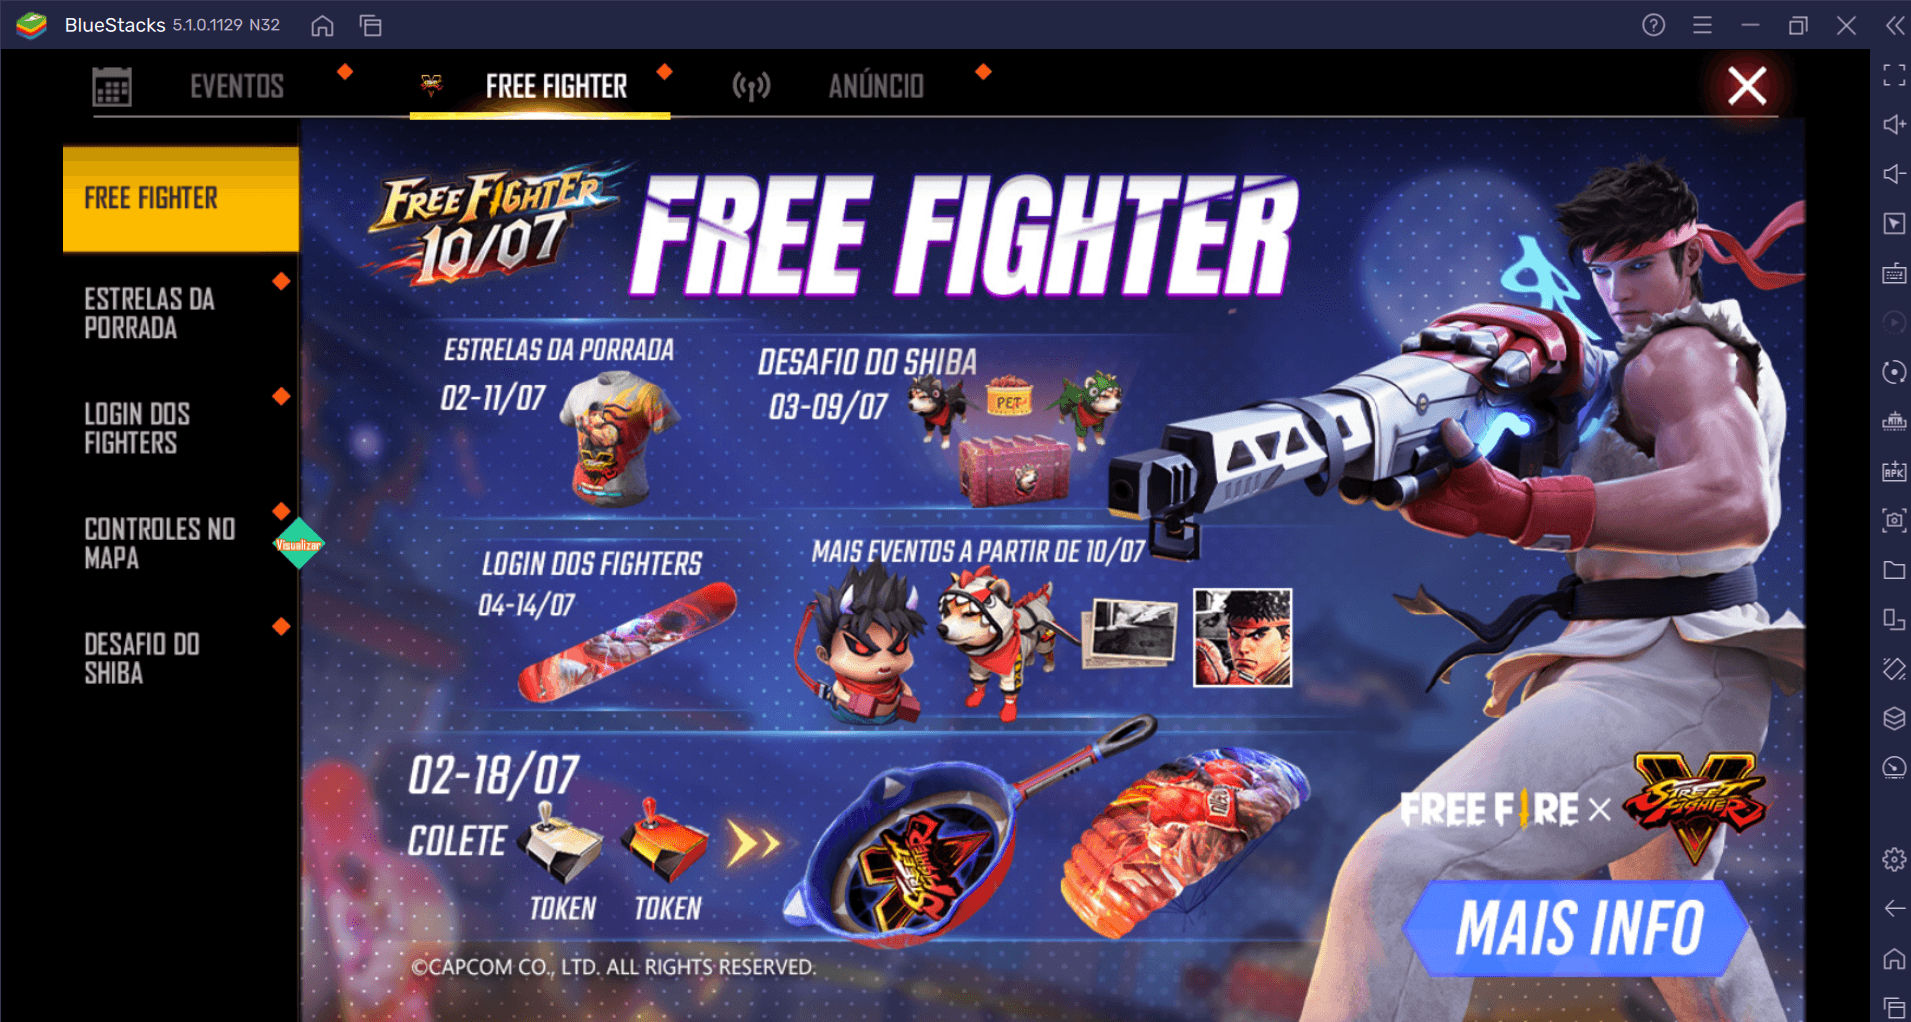 Free Fire: Participe da Luta Final de Free Fighter, parceria entre Garena e Campcon que termina neste fim de semana